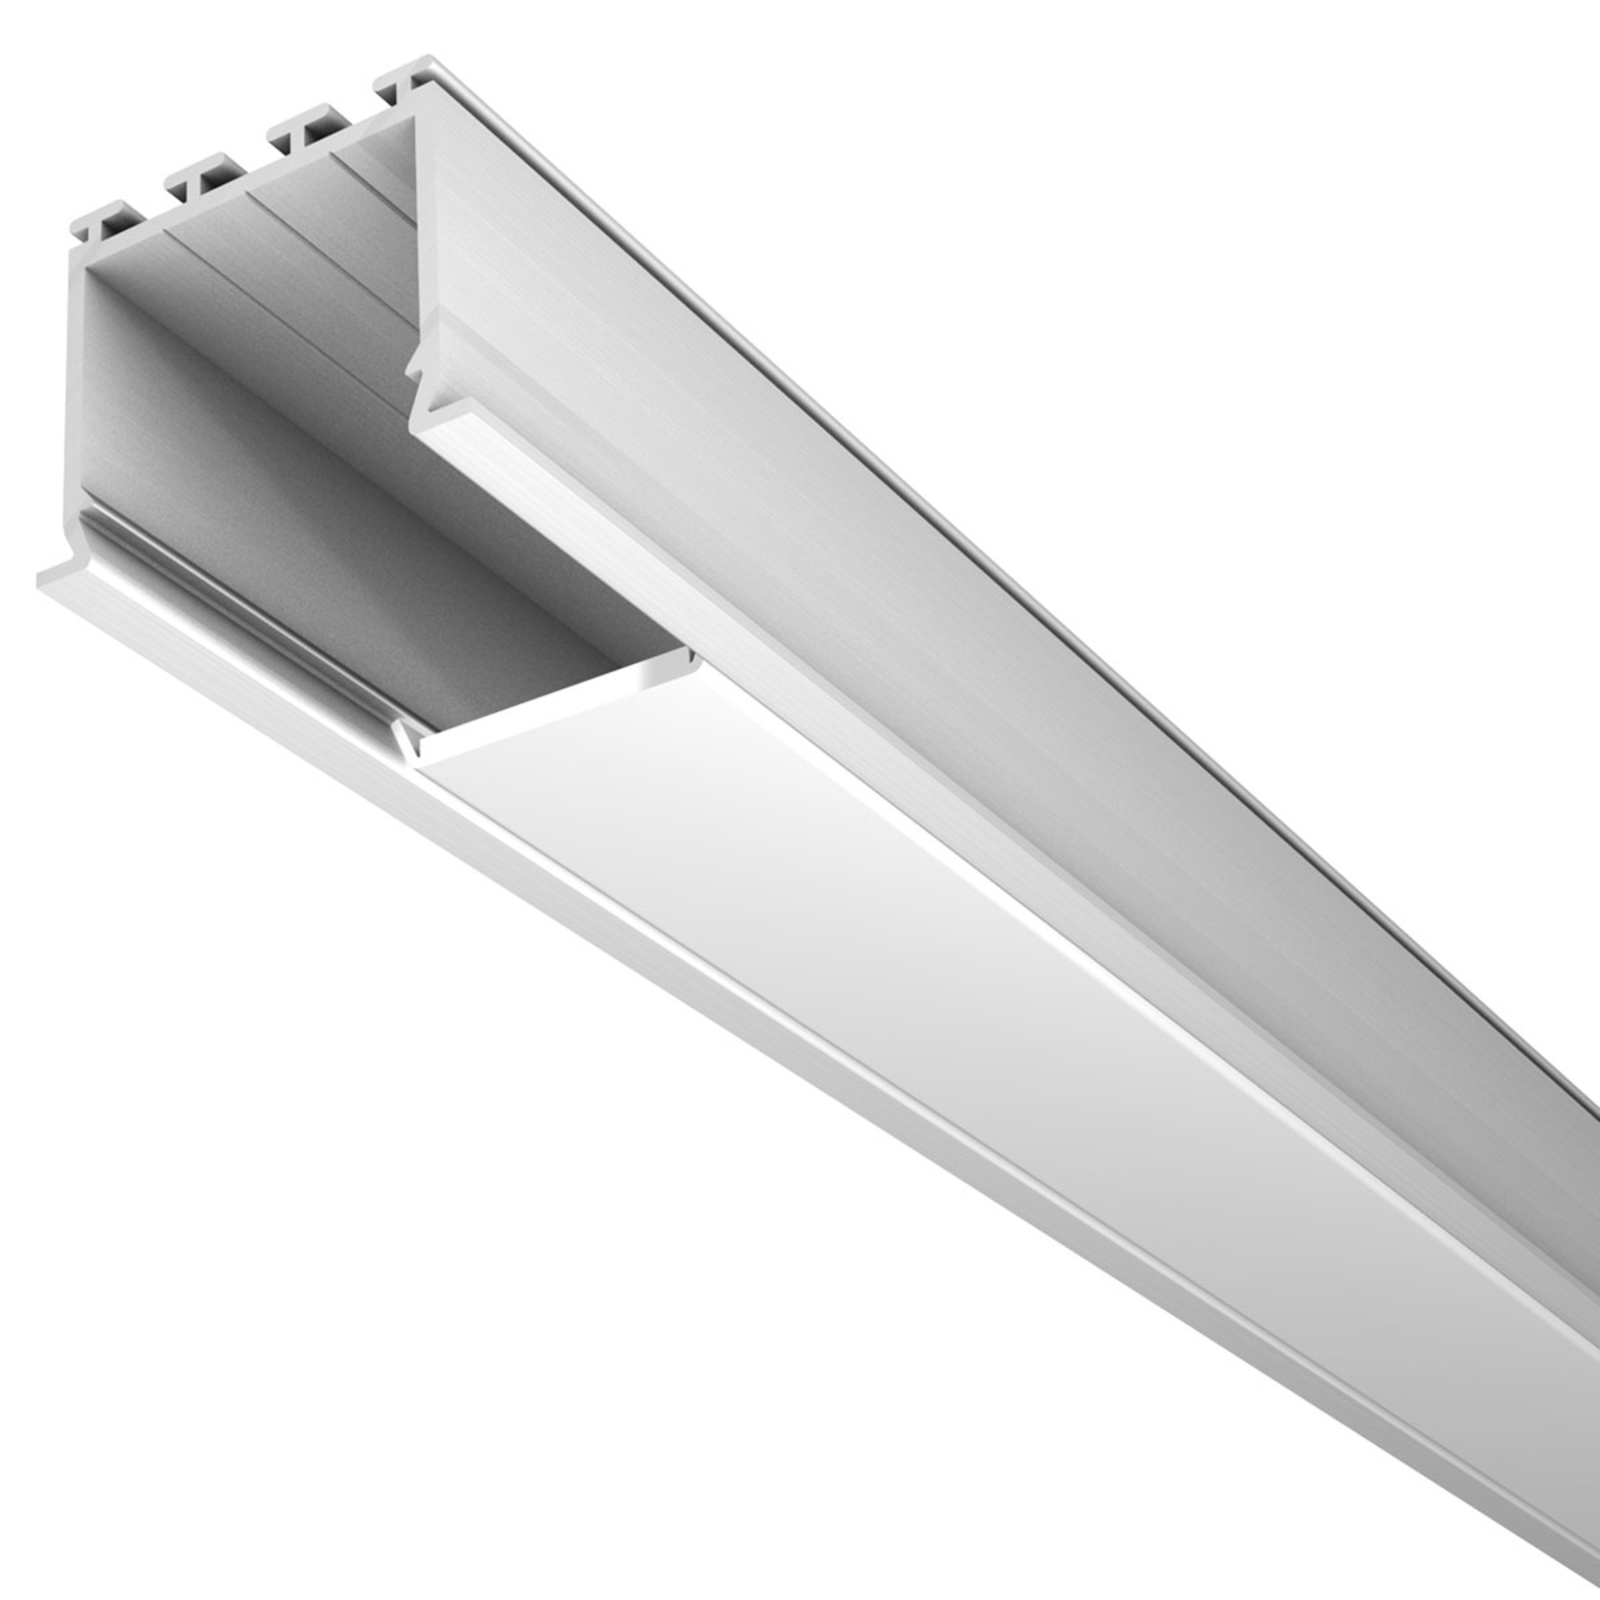 M24 LED alumīnija profils 30 mm plats iebīdāms profils